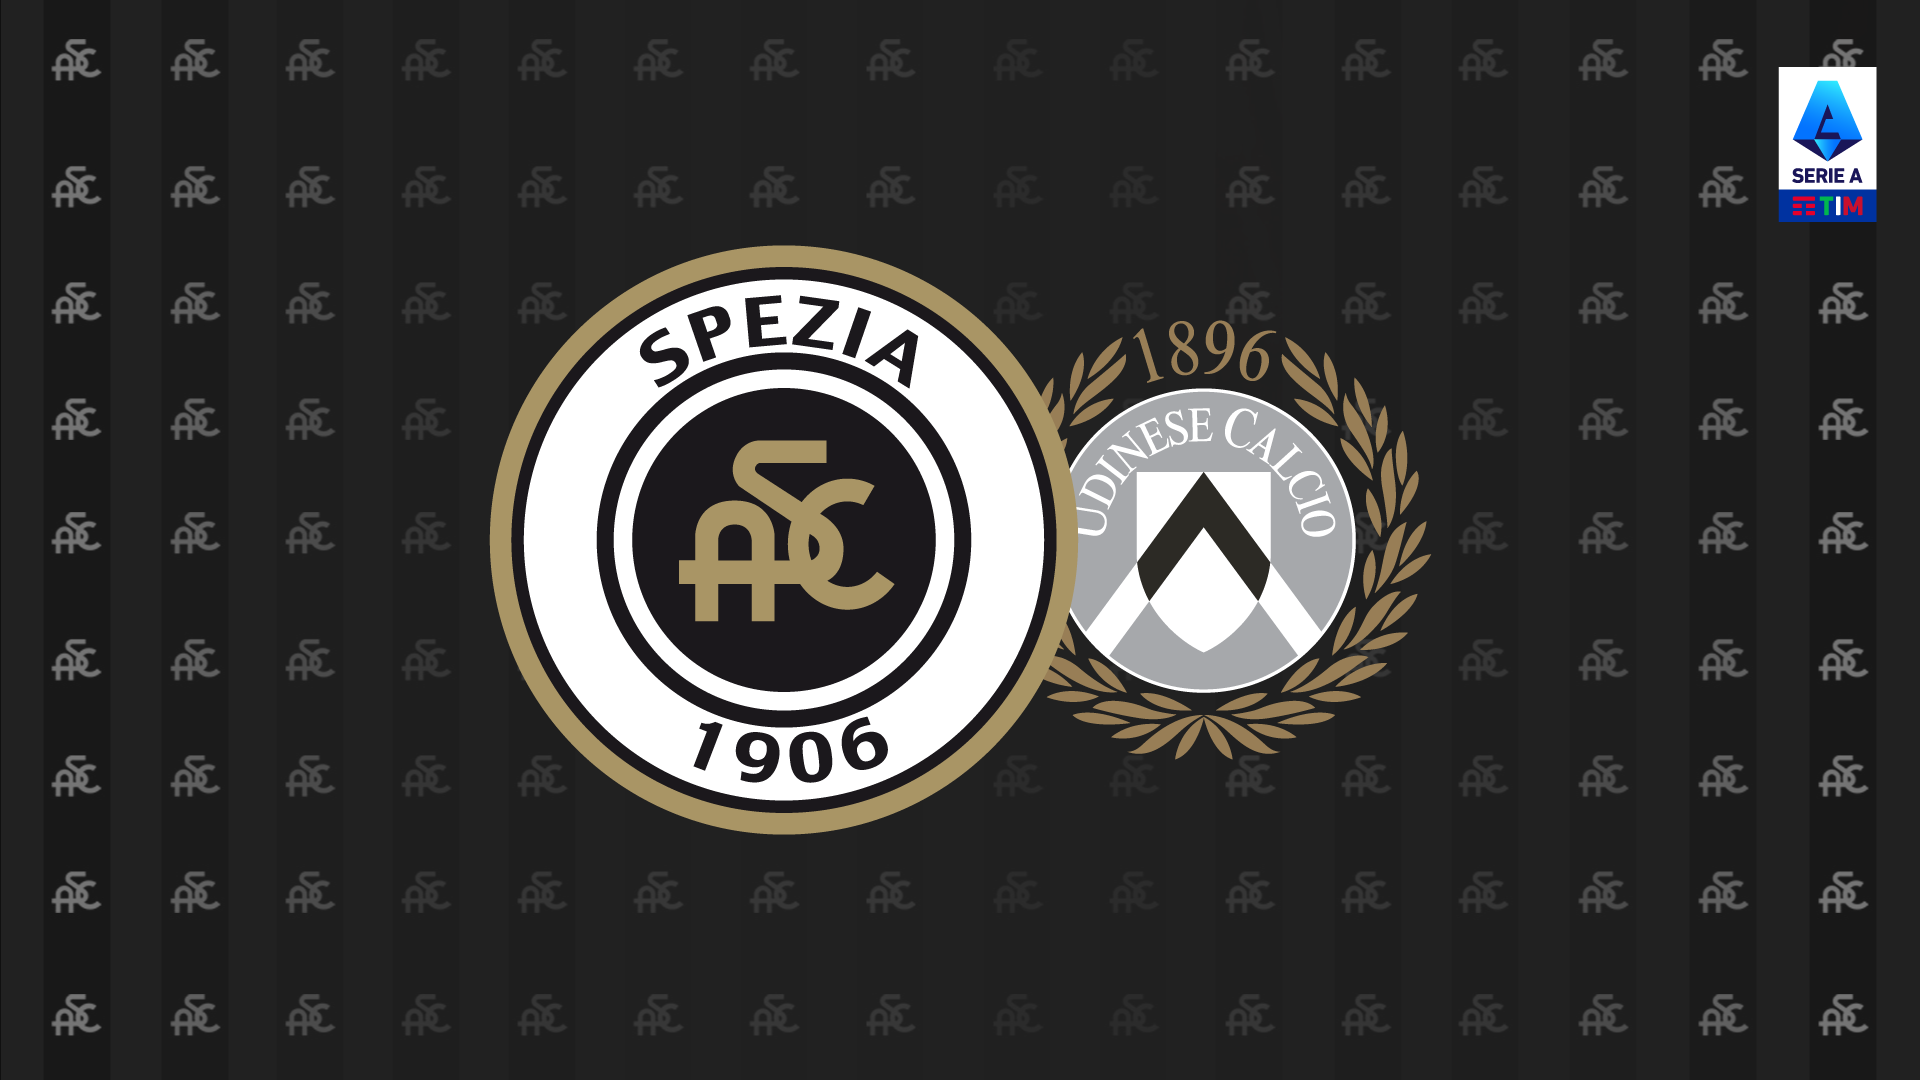 Spezia-Udinese: ticket omaggio per tutti i vecchi abbonati. Vendita libera a partire dalle 16:00